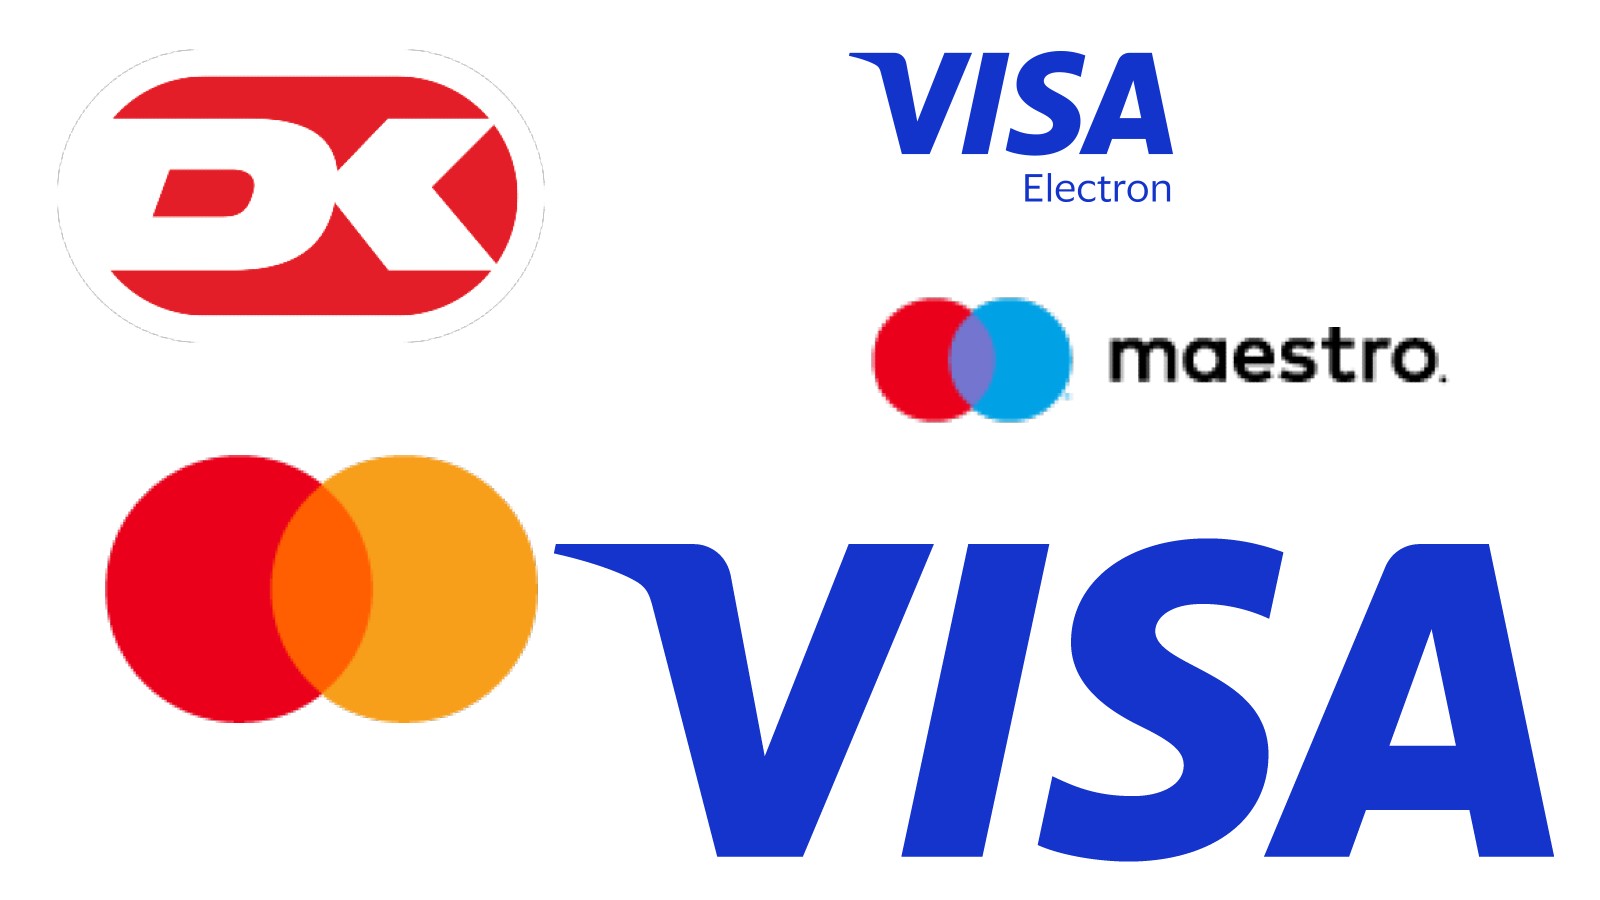 Det er nu muligt at betale med VISA og Mastercard på LGU.dk